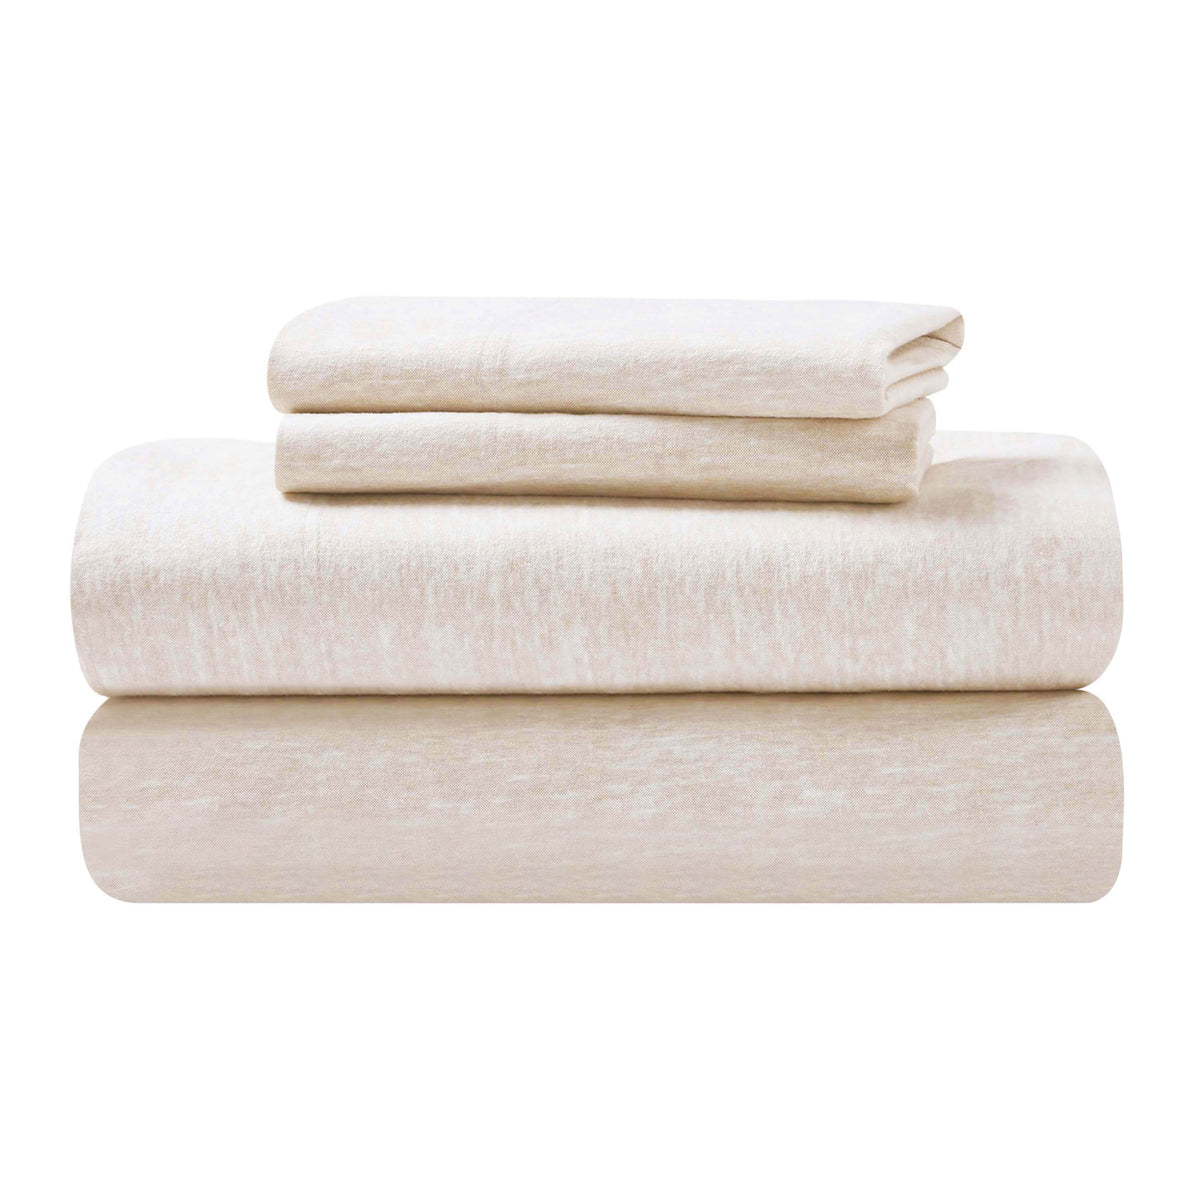 Melange Flannel Cotton Two-Toned Textured Deep Pocket Sheet Set - Beige